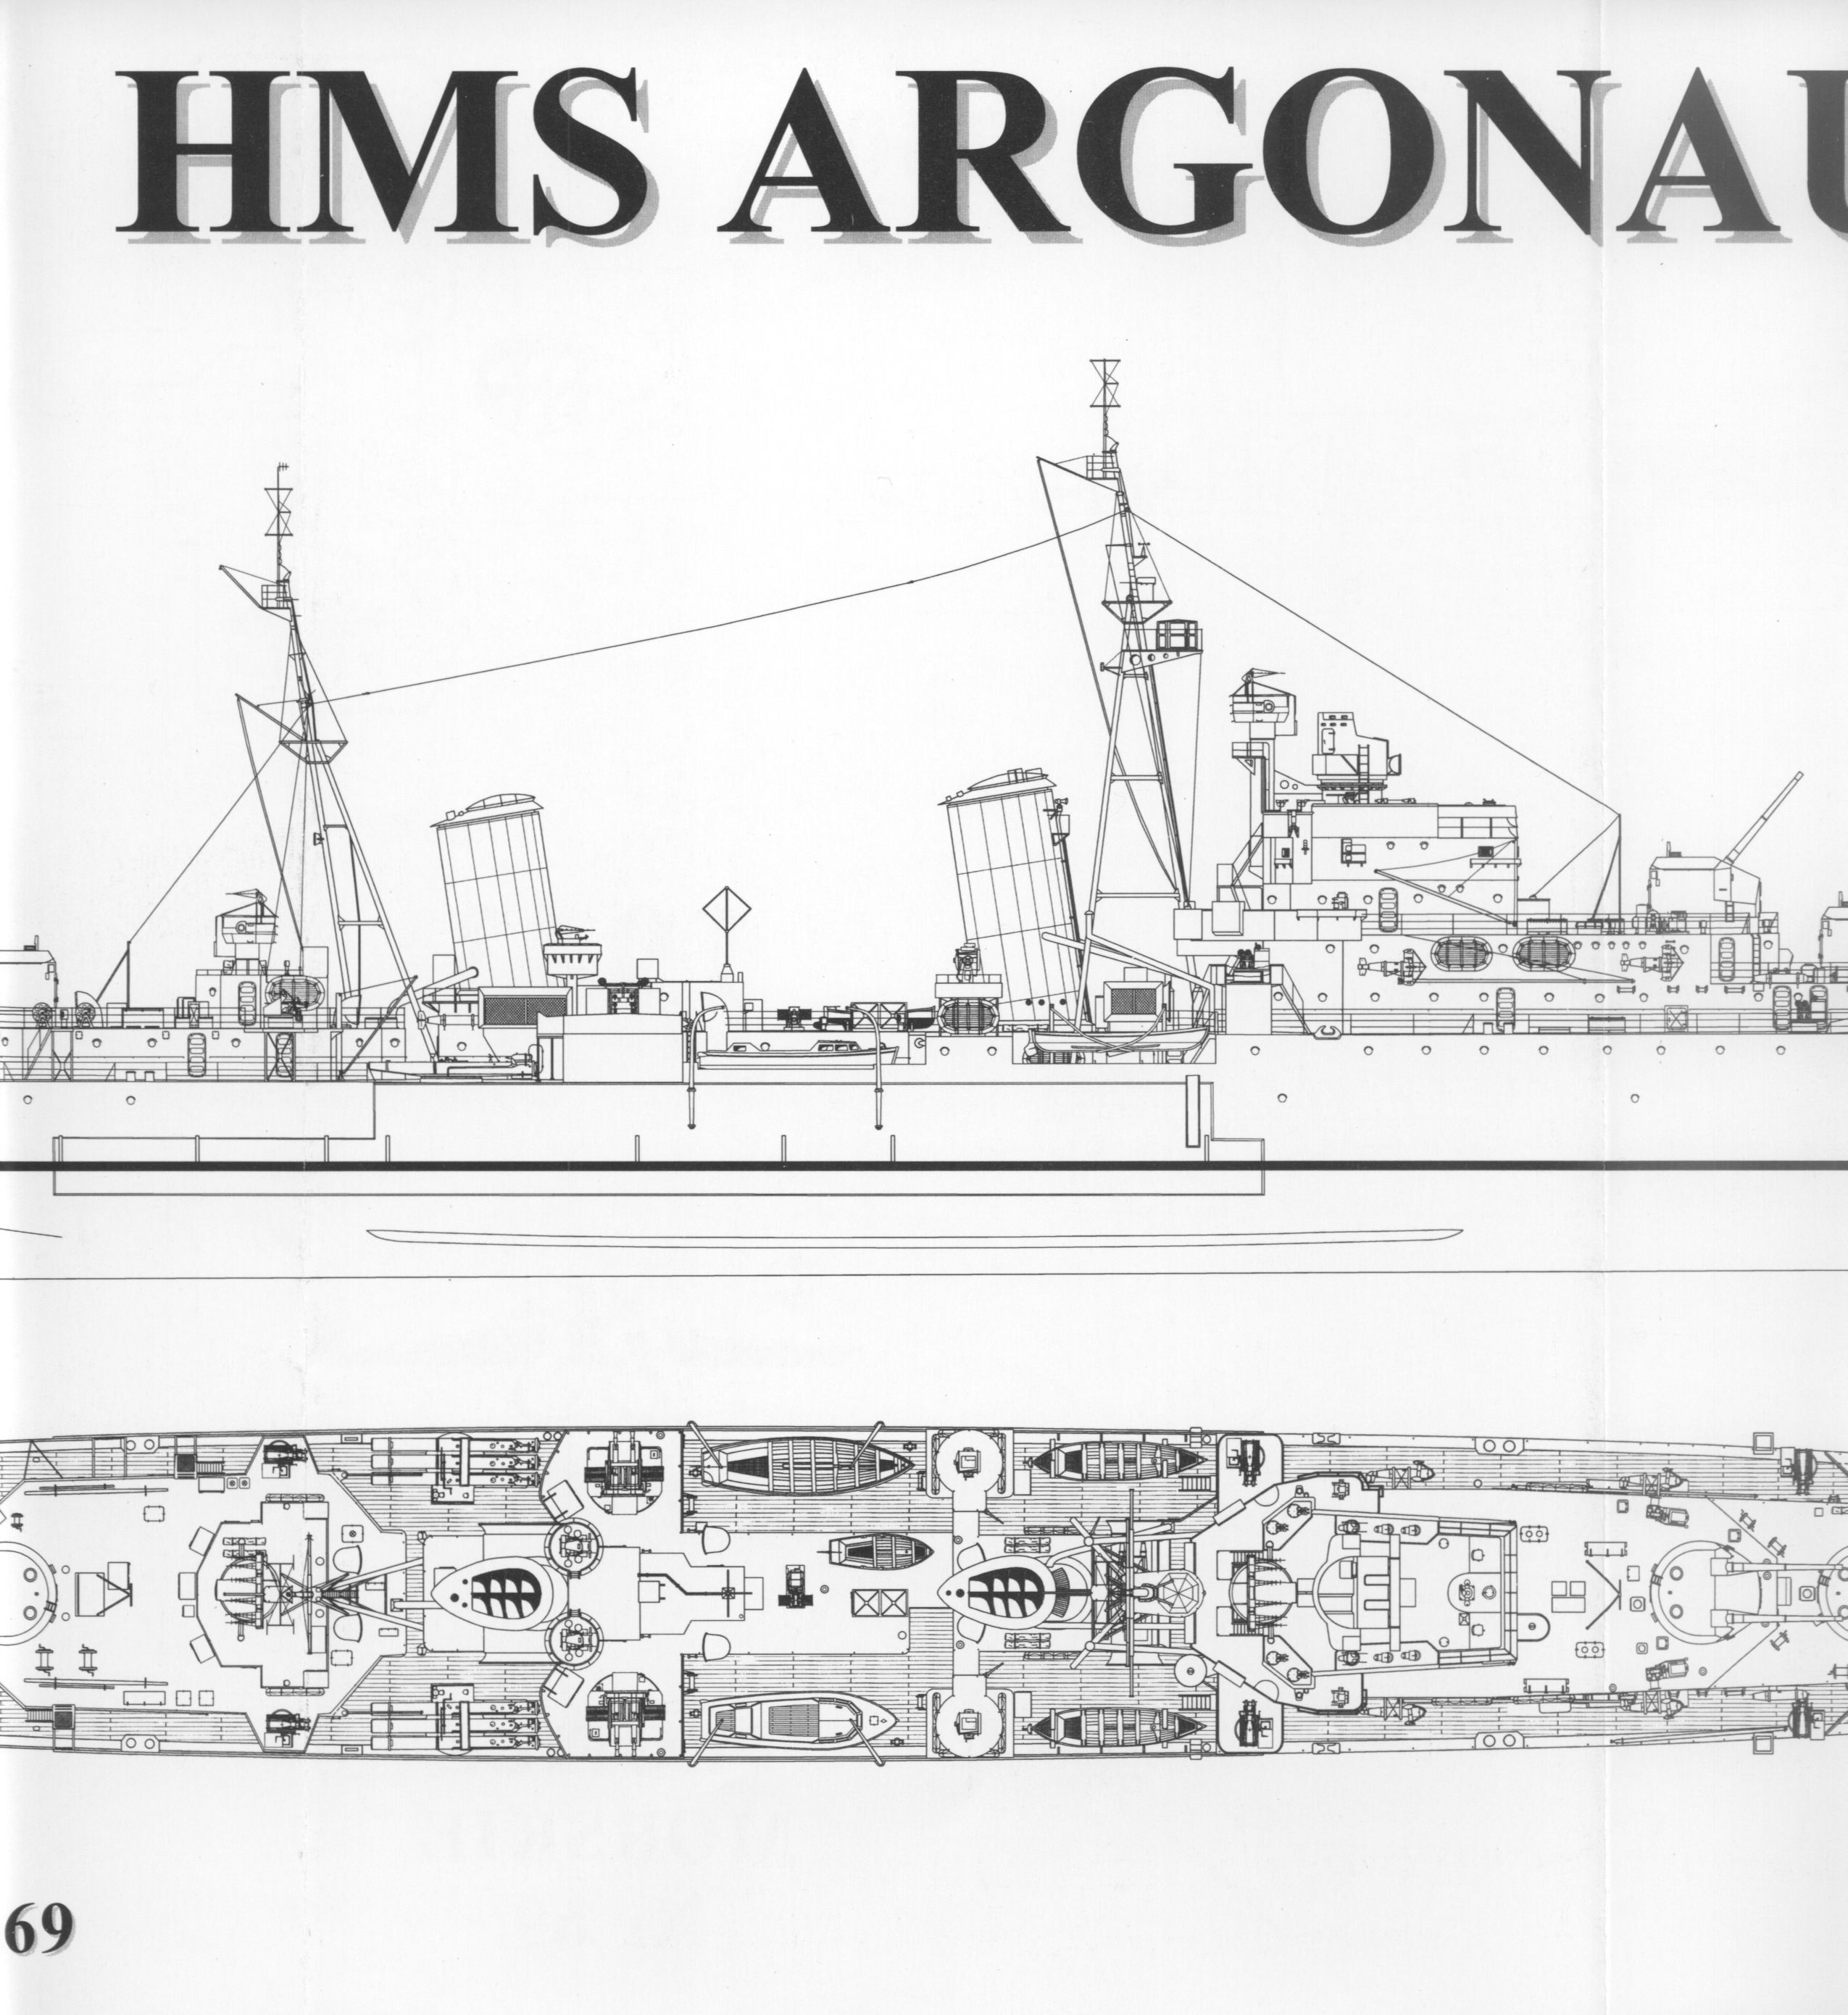 Argonaut drawing 01b.jpg